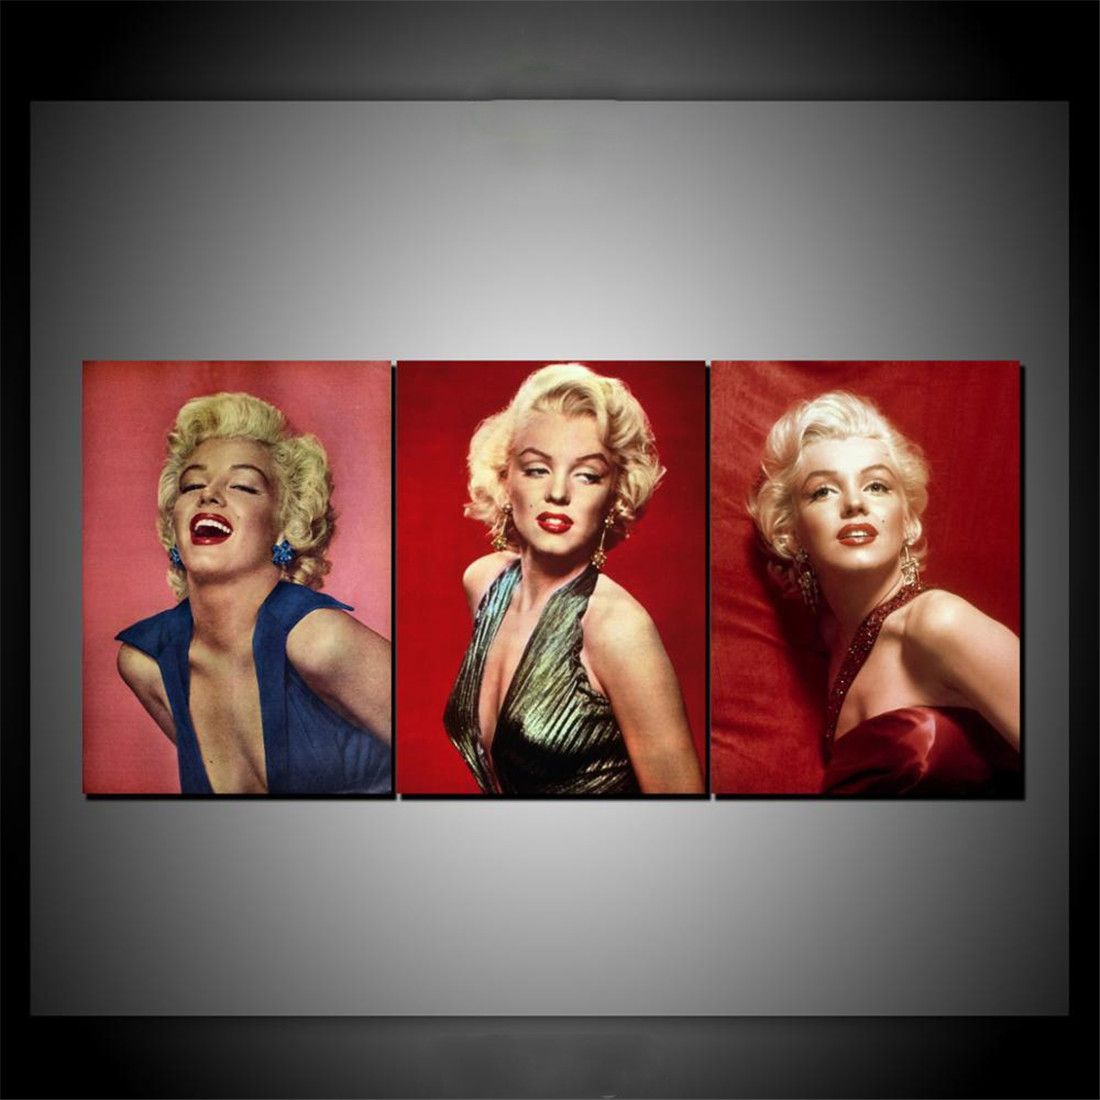 Großhandel Marilyn Monroe 3 3 Stück Wohnkultur Hd Print Moderne Kunst Leinwand Ungerahmt Gerahmt Von Qq $13 67 Auf De Dhgate